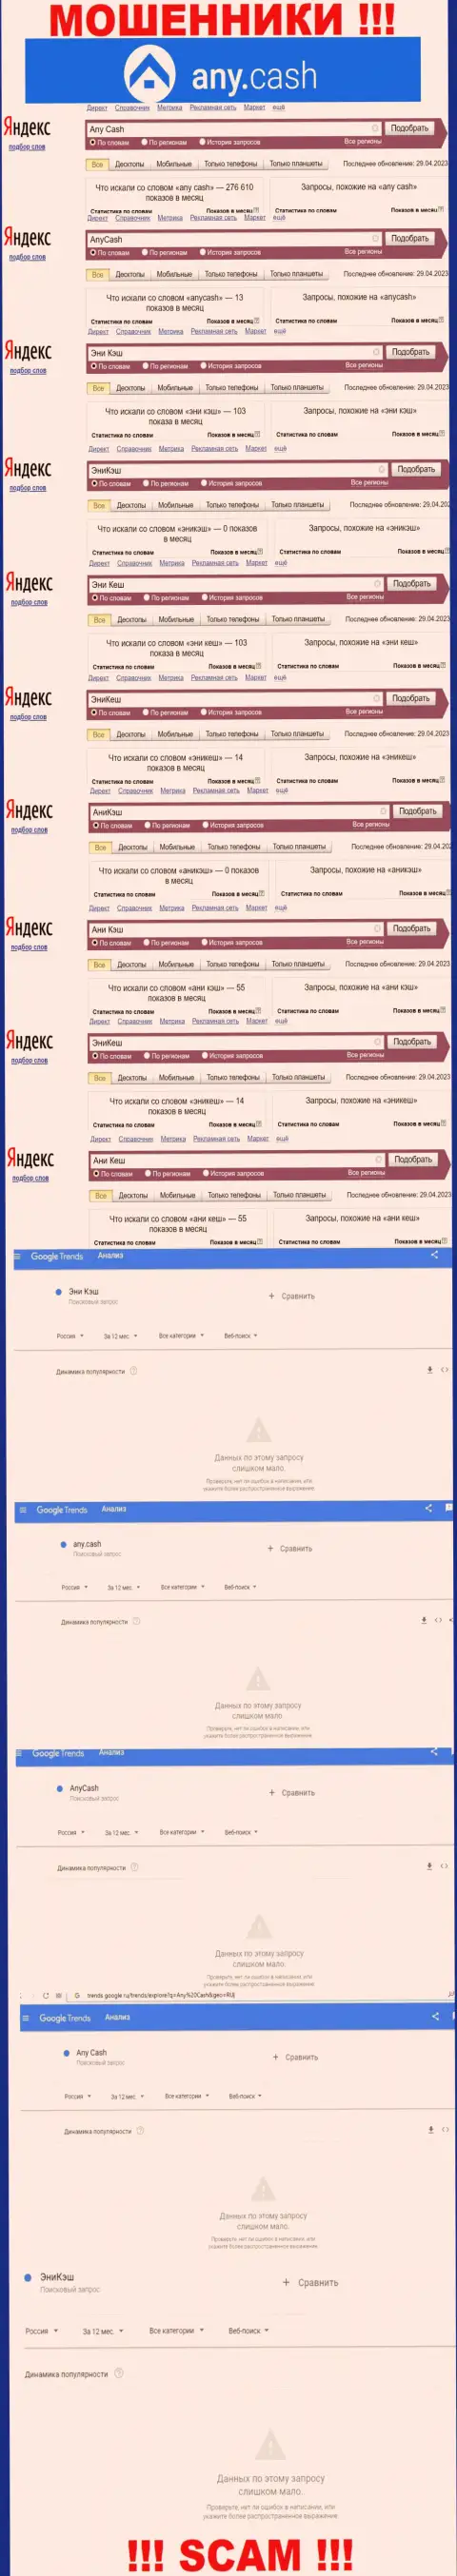 Скрин результата online запросов по жульнической компании АниКэш